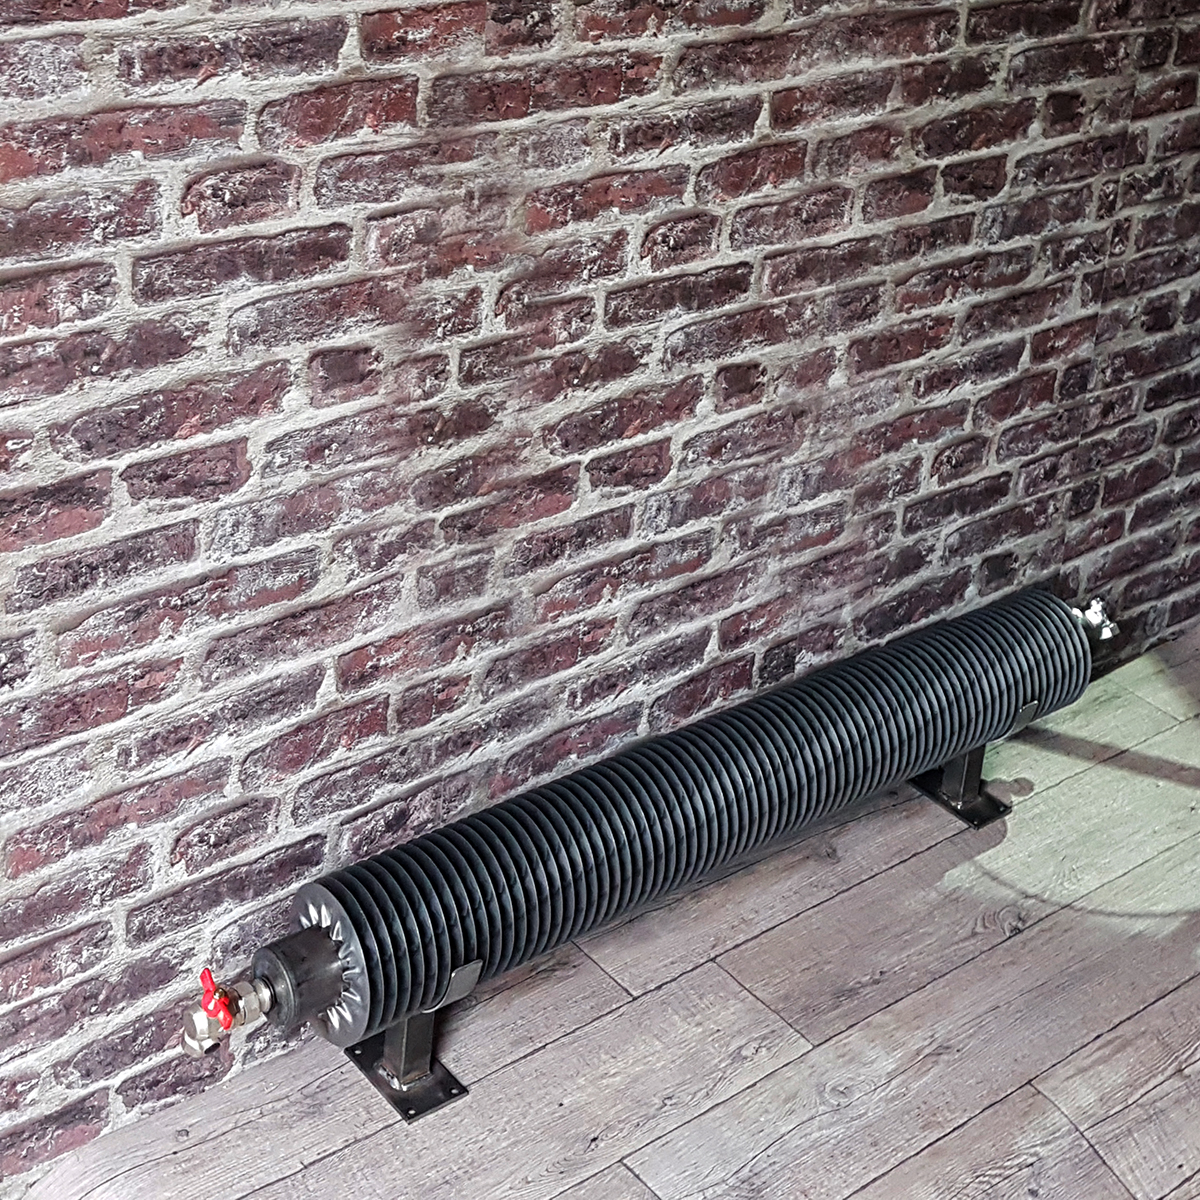 TUBE AILETTES : le radiateur tube ailettes style industriel - le radiateur industriel eau chaude dont la pureté du tube rond aux fines ailettes en acier brut vous séduira